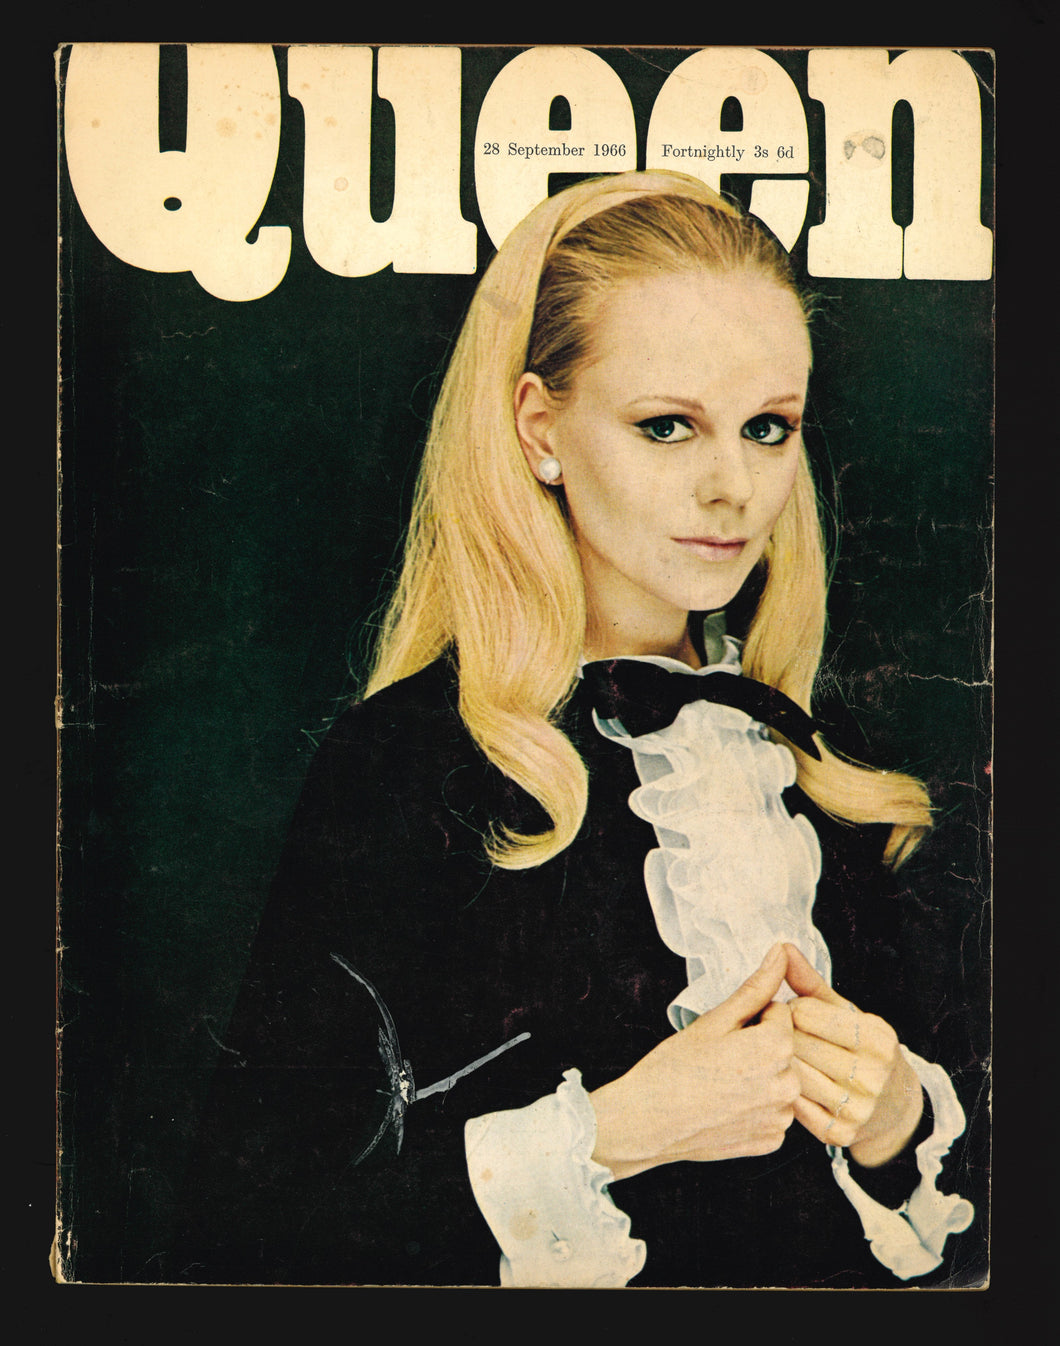 Queen Sept 28 1966